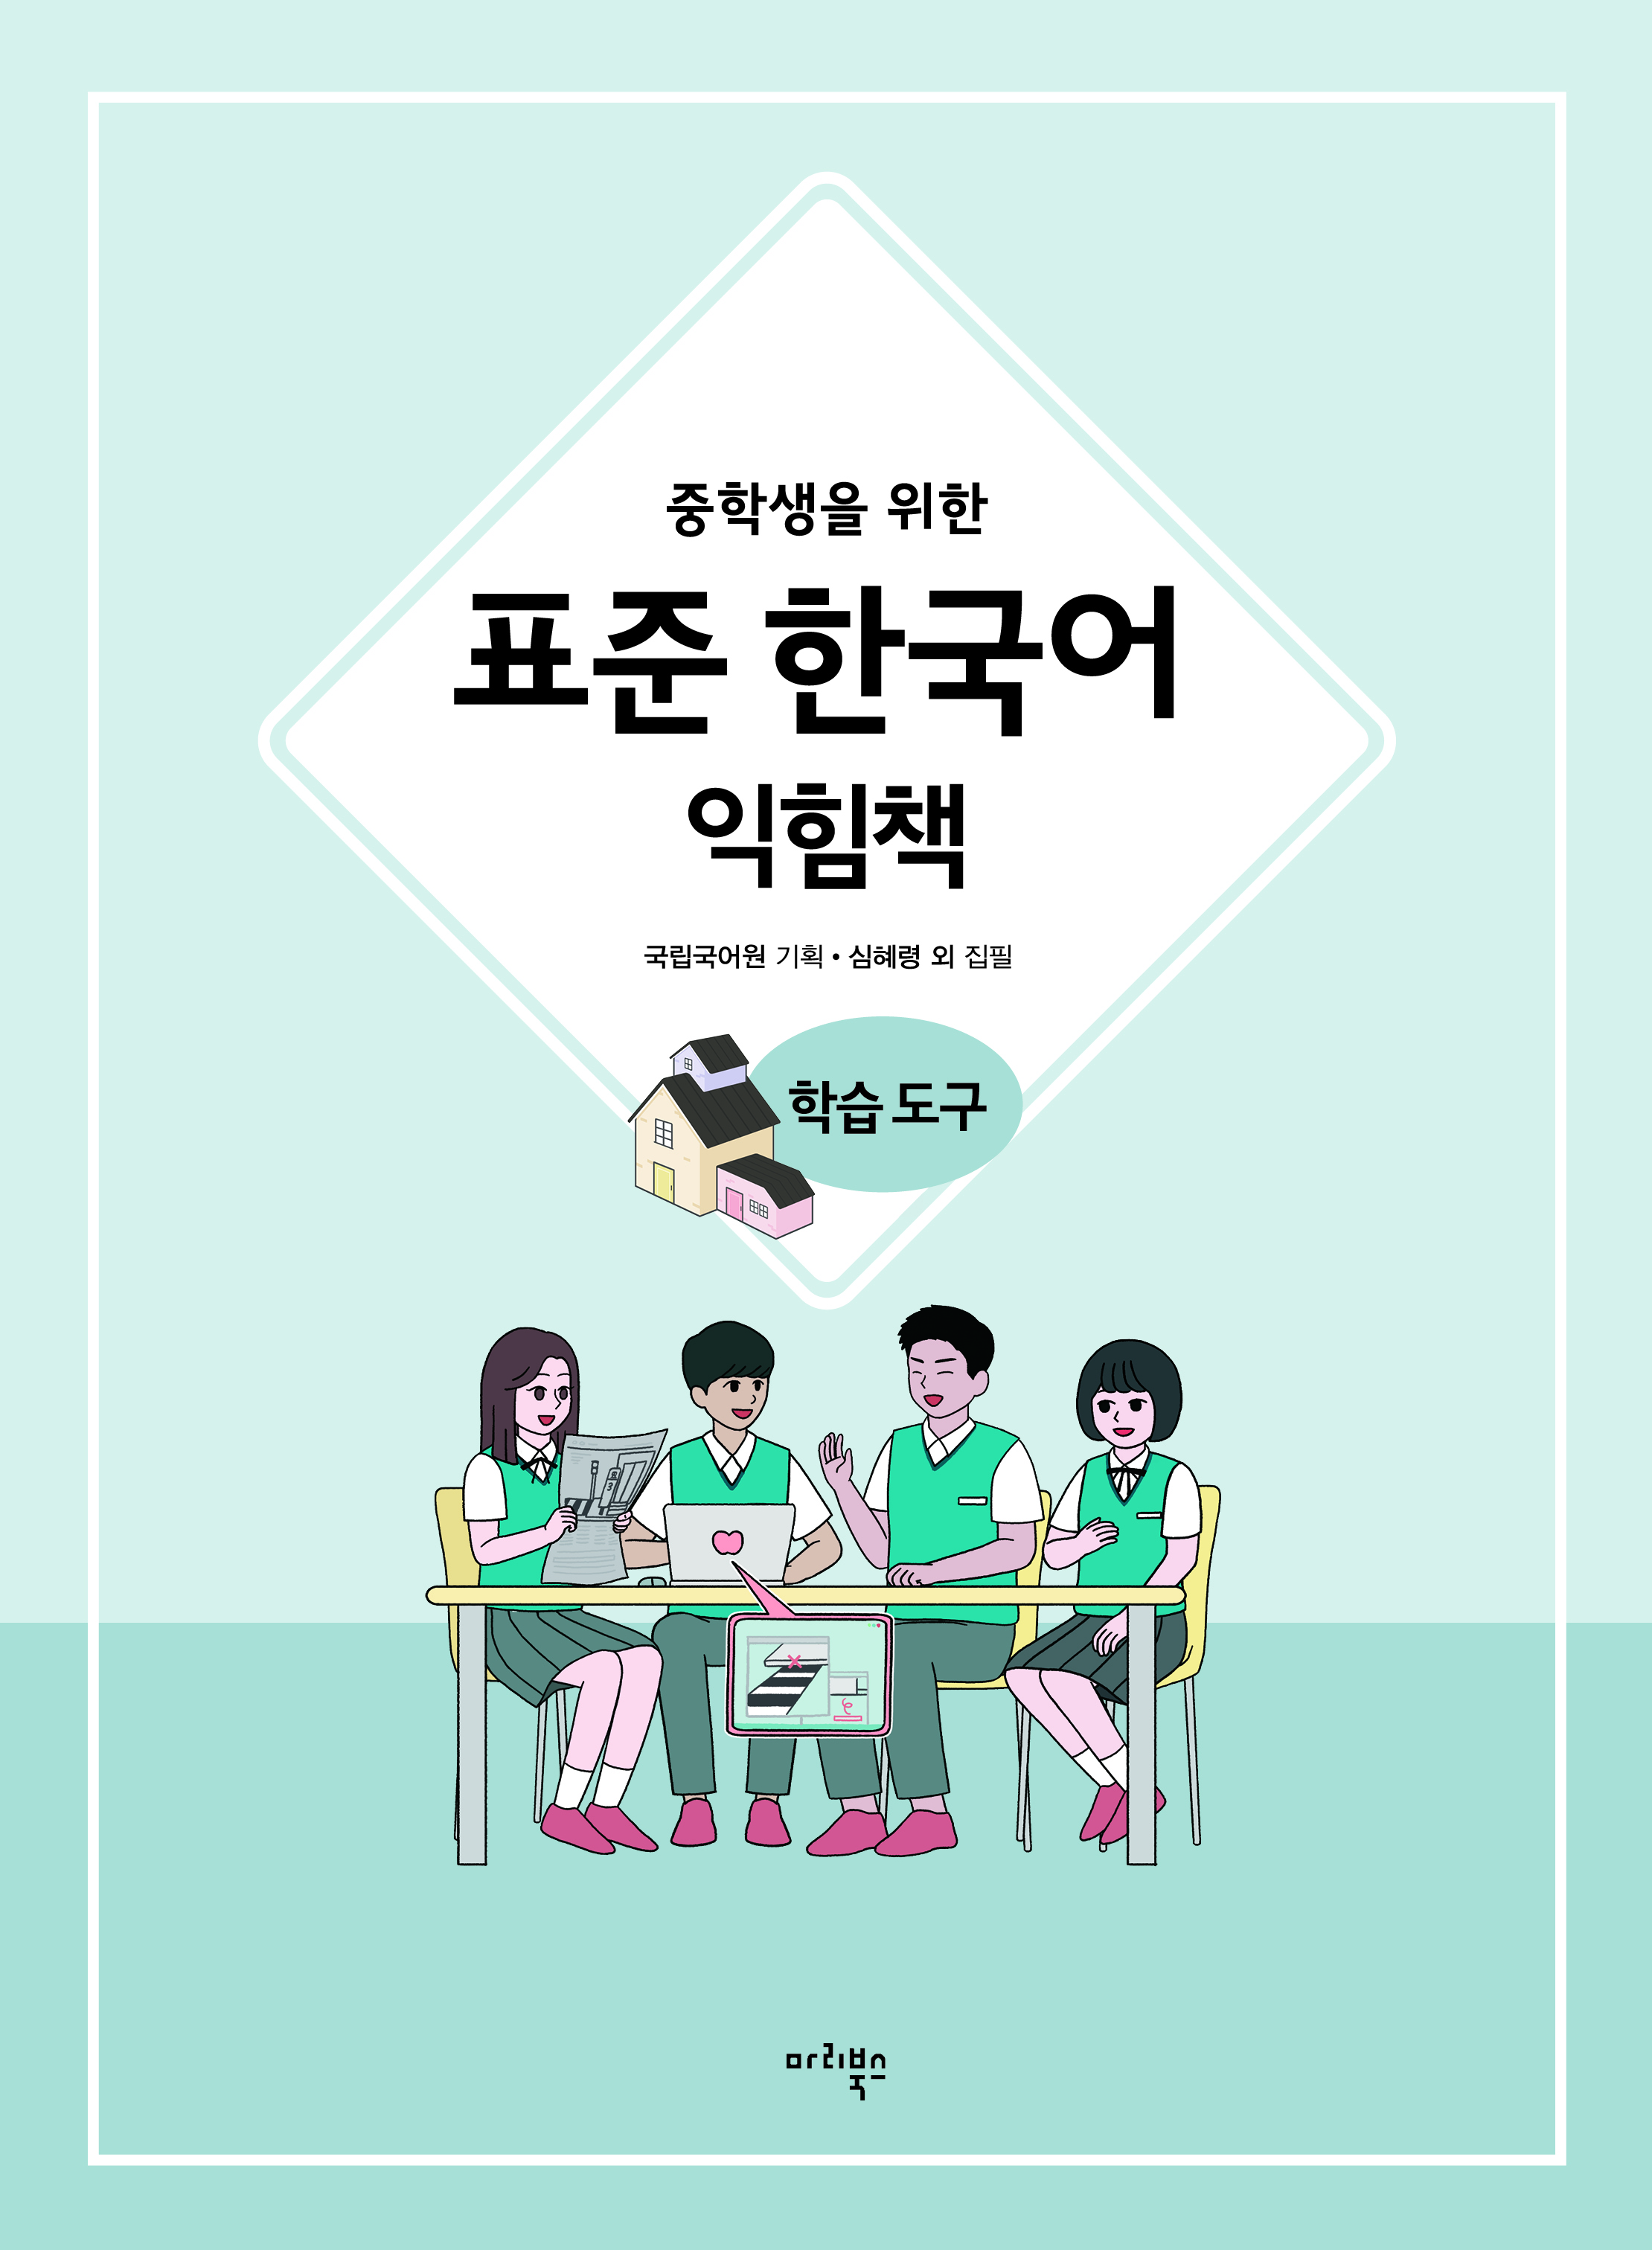 중학생을 위한 표준 한국어 익힘책 학습 도구